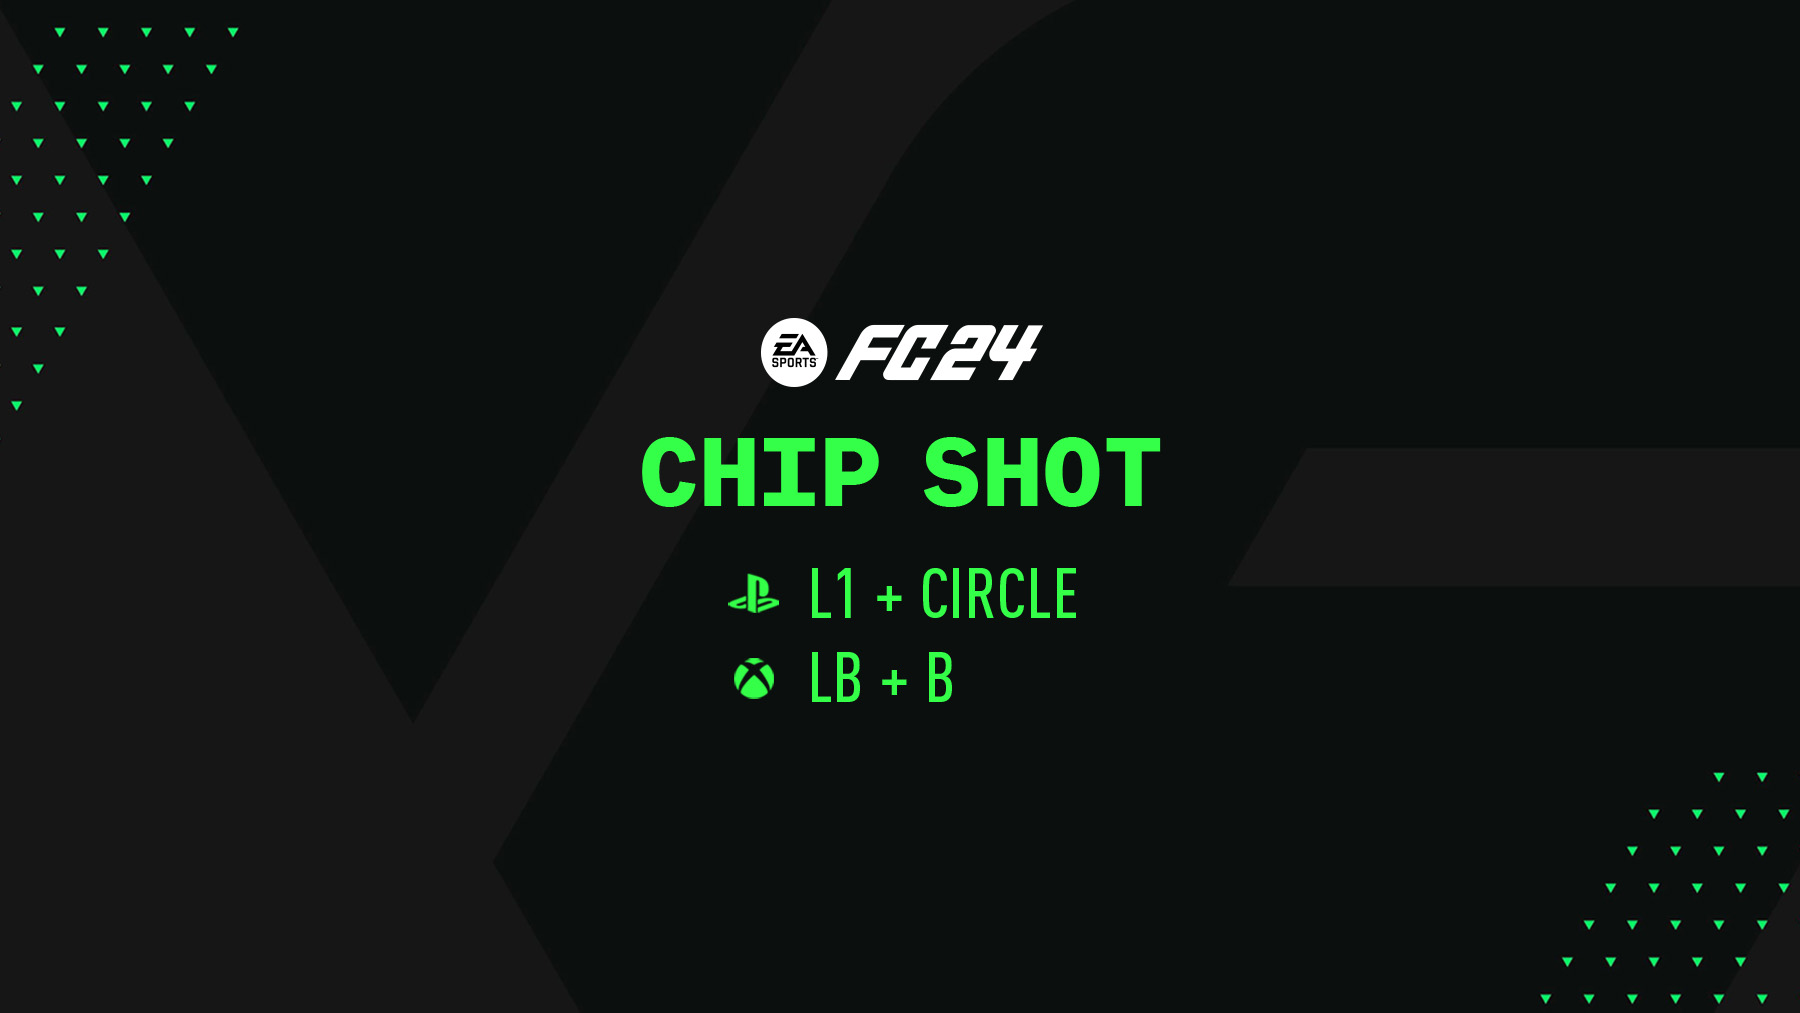 FC 24 Chip Shot